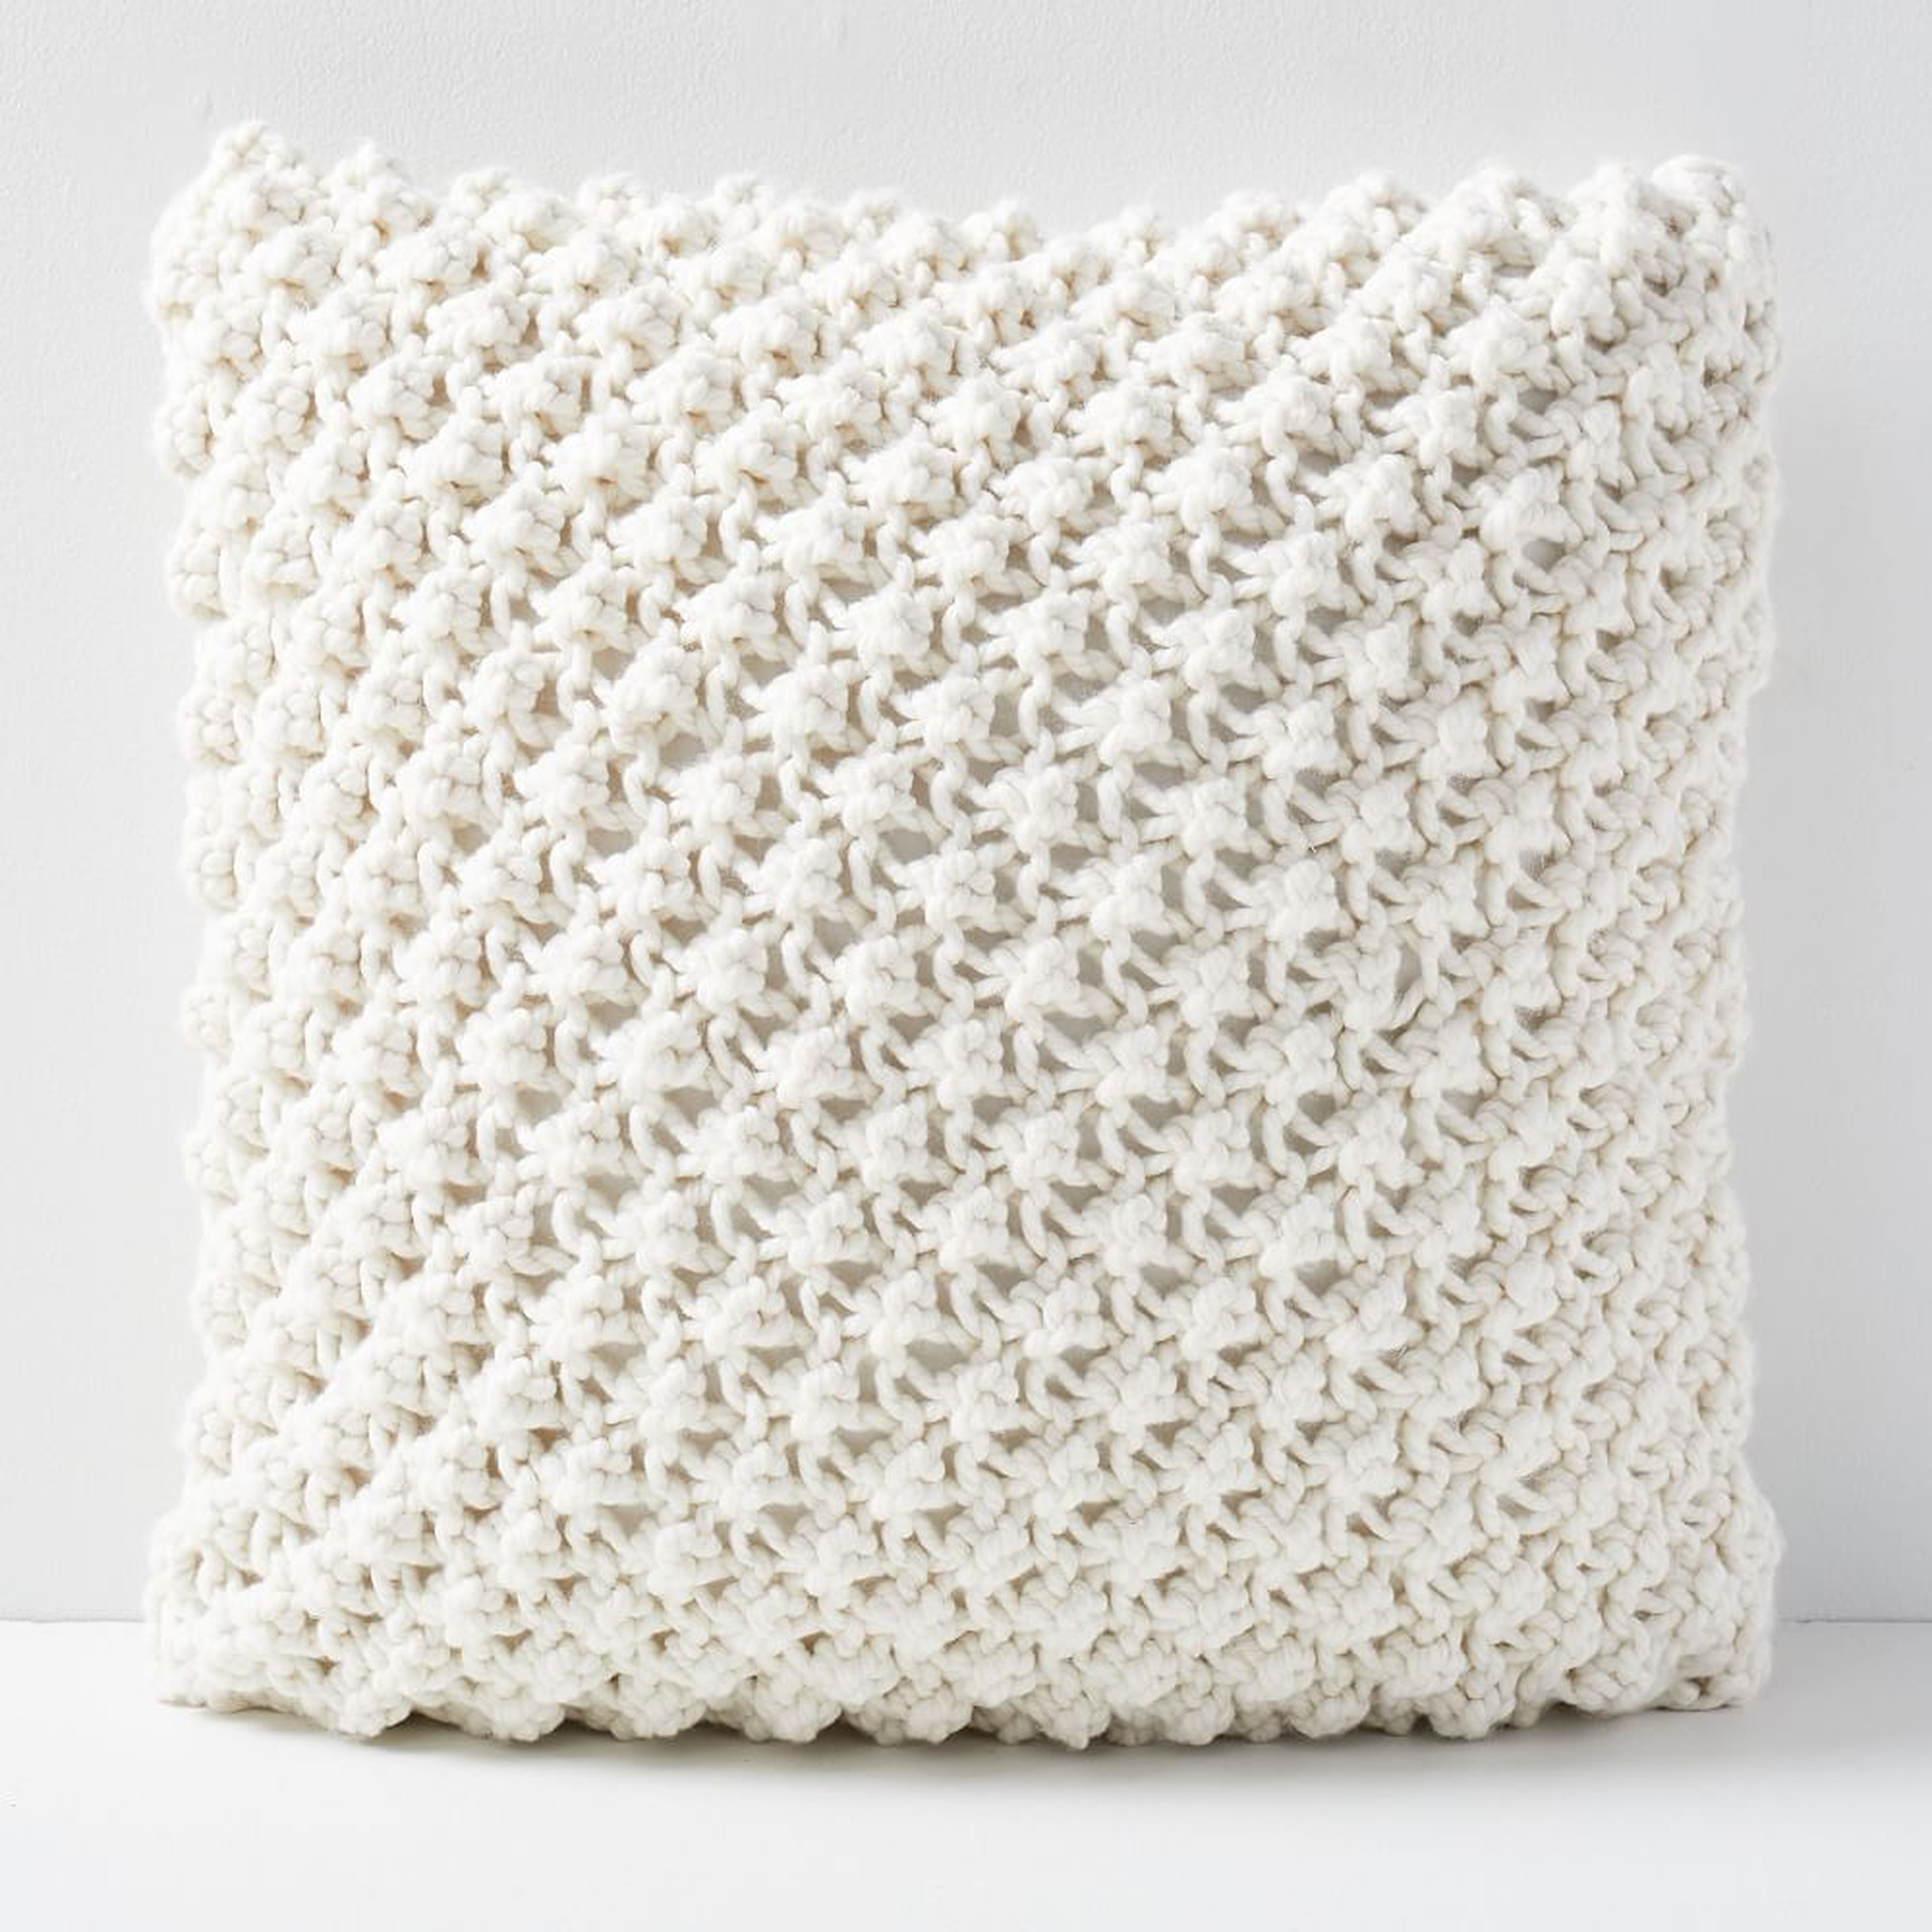 Bobble Knit Pillow Cover, 24"x24", Natural - West Elm